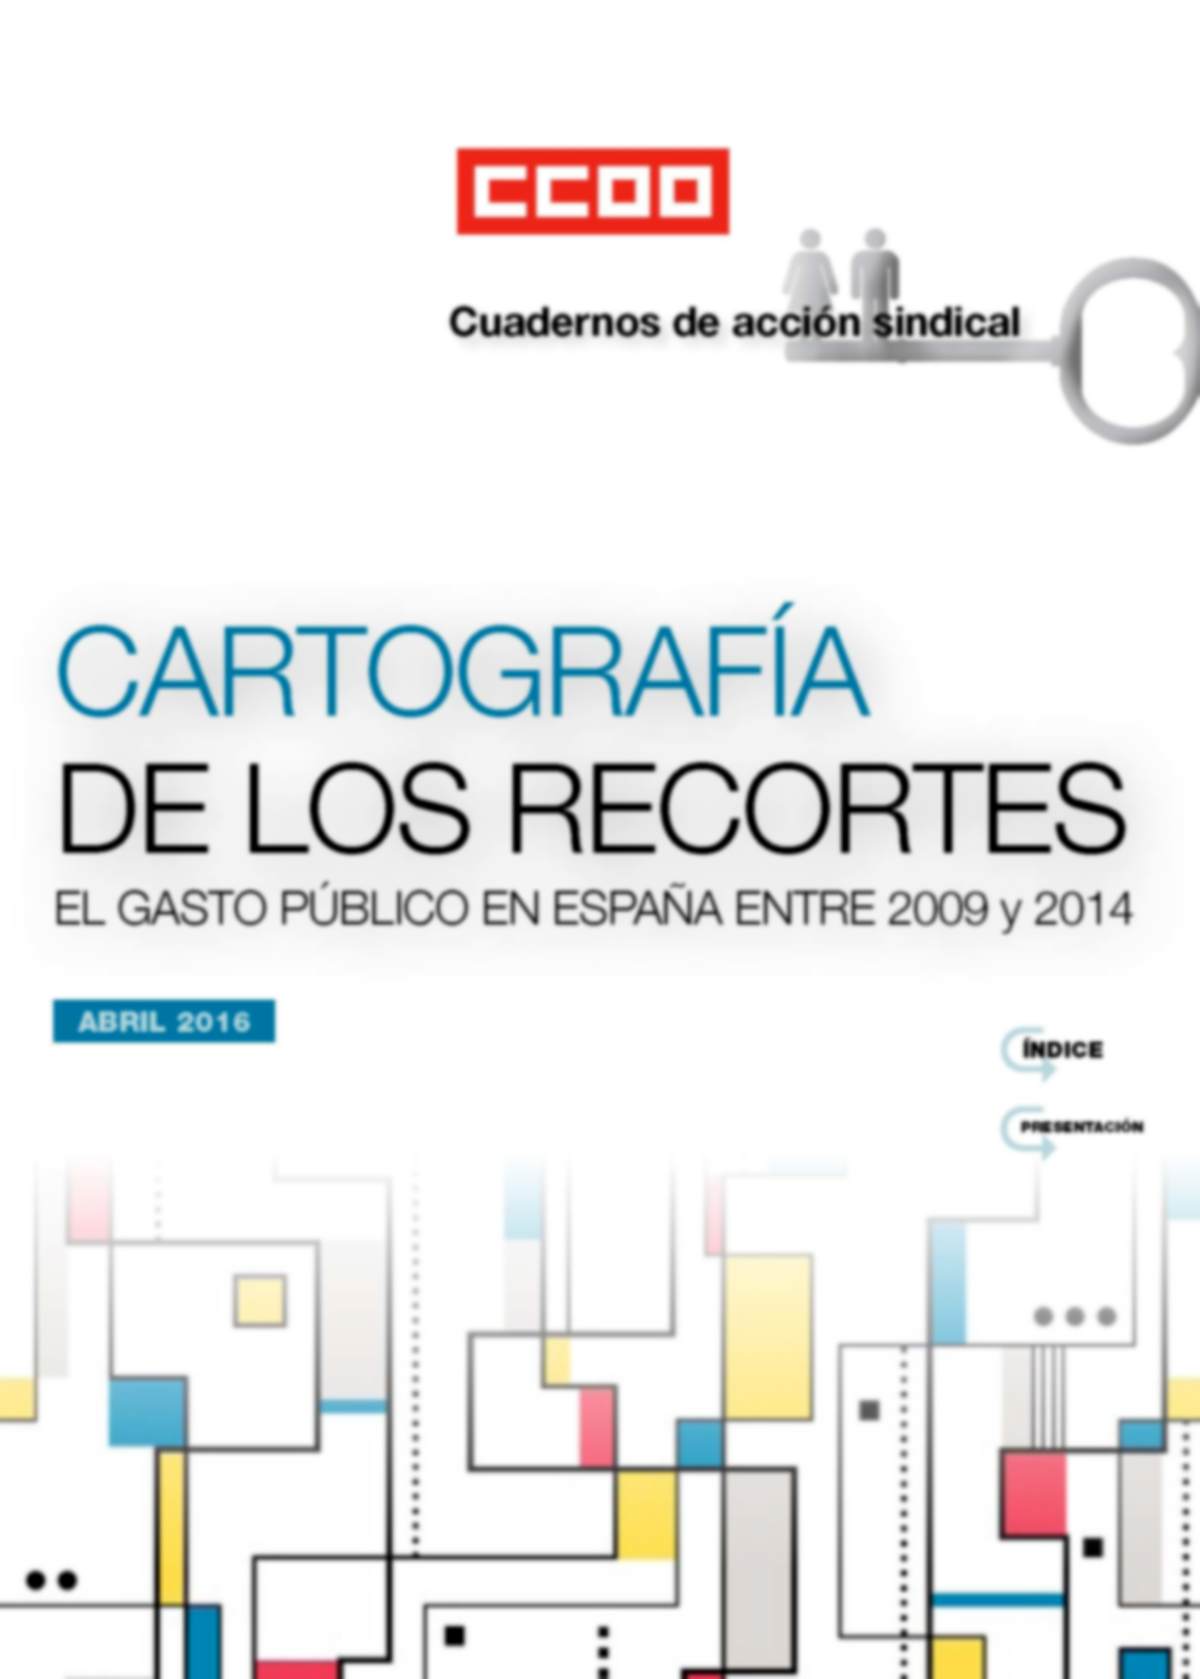 CARTOGRAFÍA DE LOS RECORTES. El gasto público en España entre 2009 y 2014